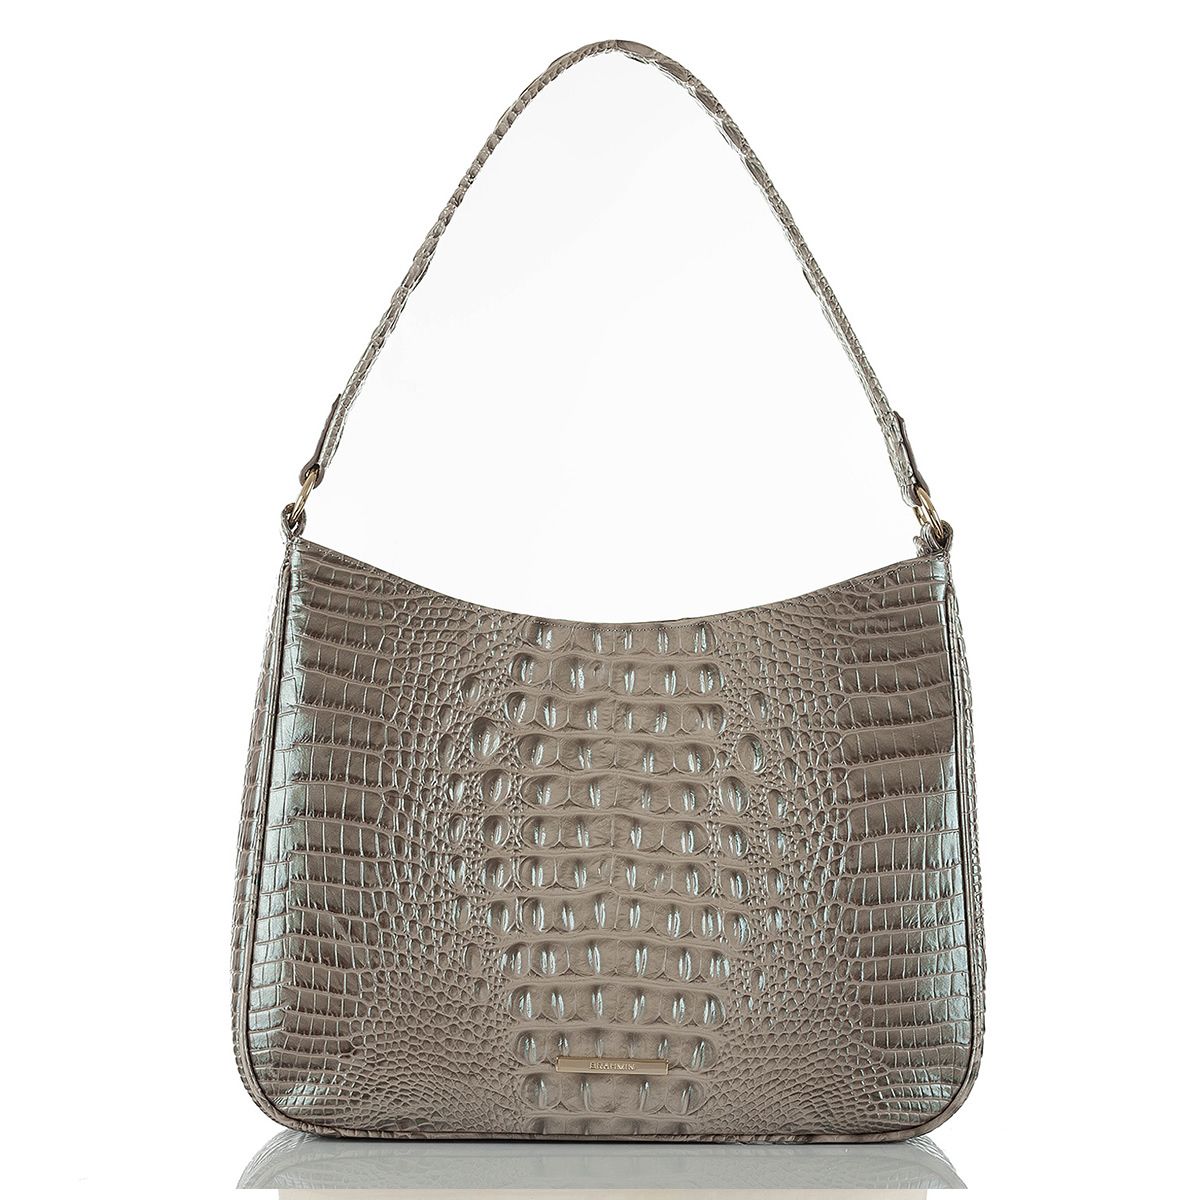 Macy's Purses And Handbags For Women | semashow.com